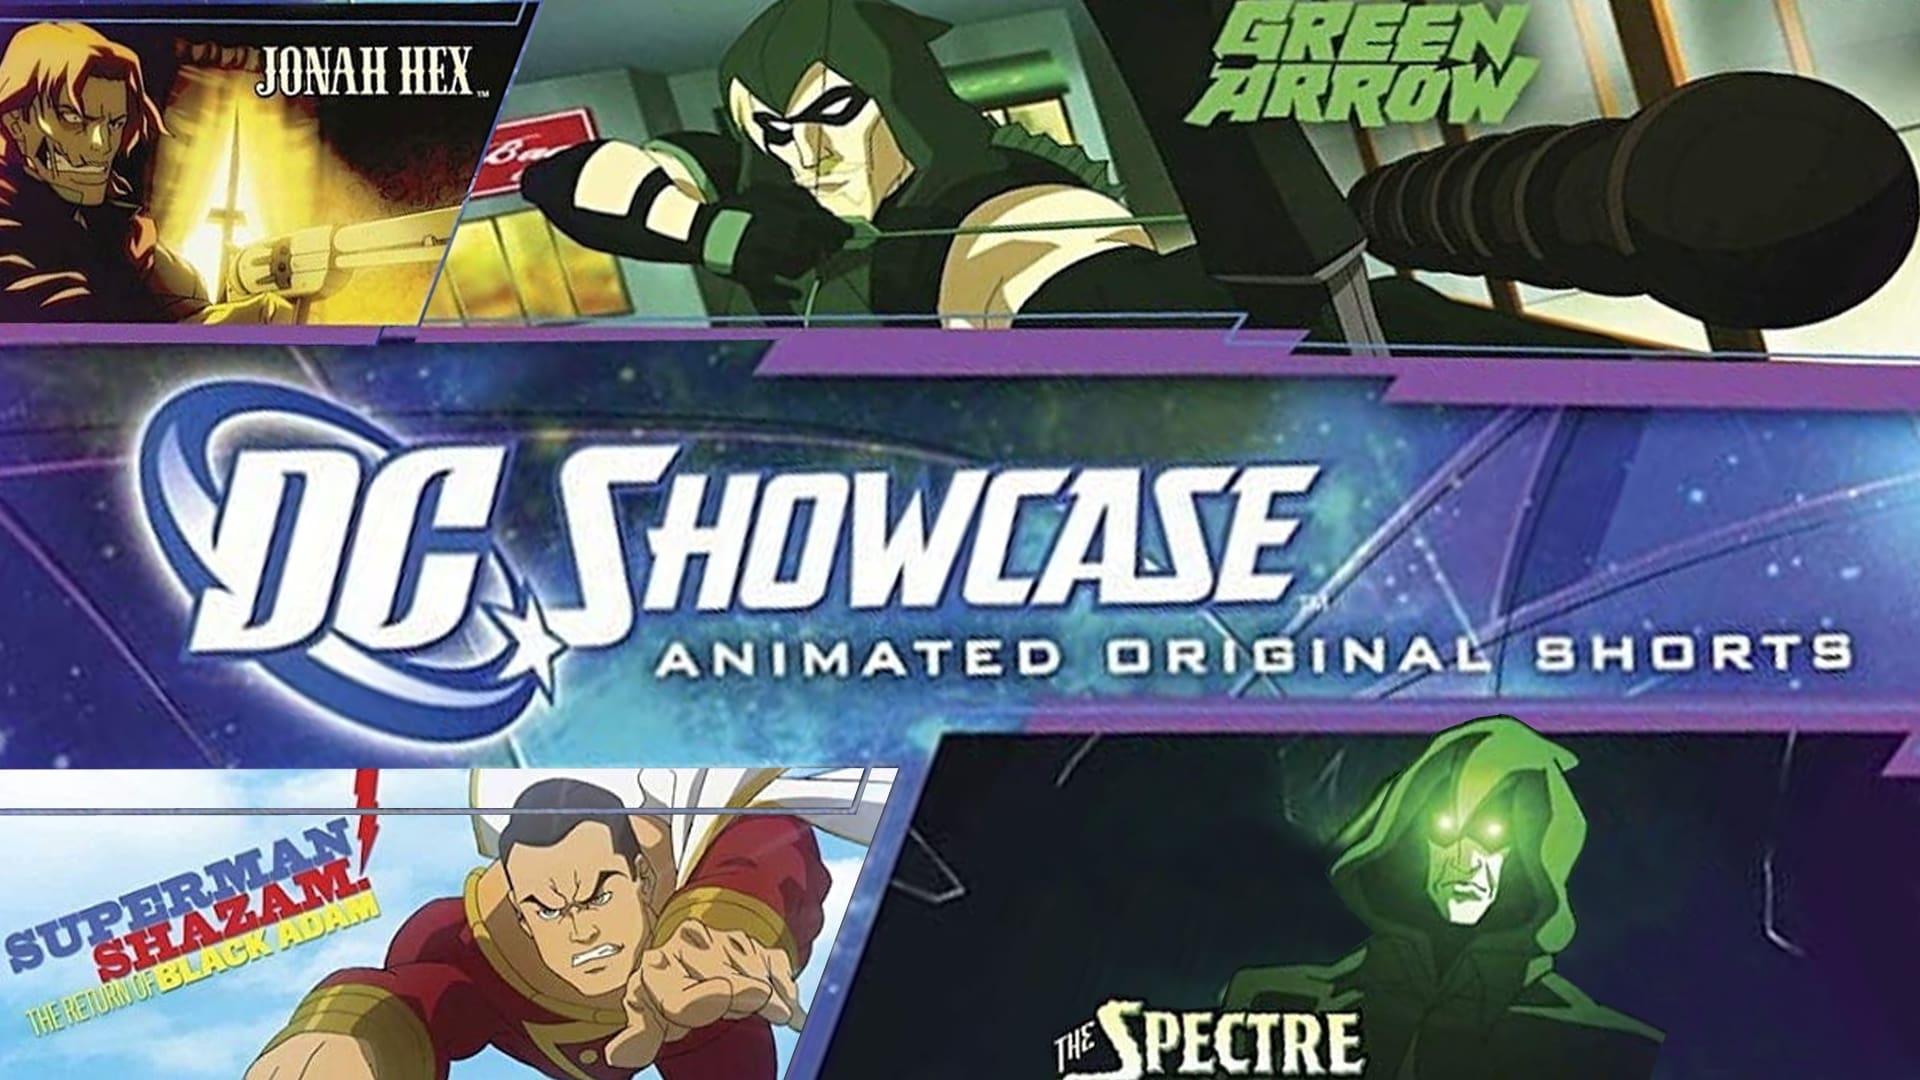 DC Showcase Original Shorts Collection backdrop